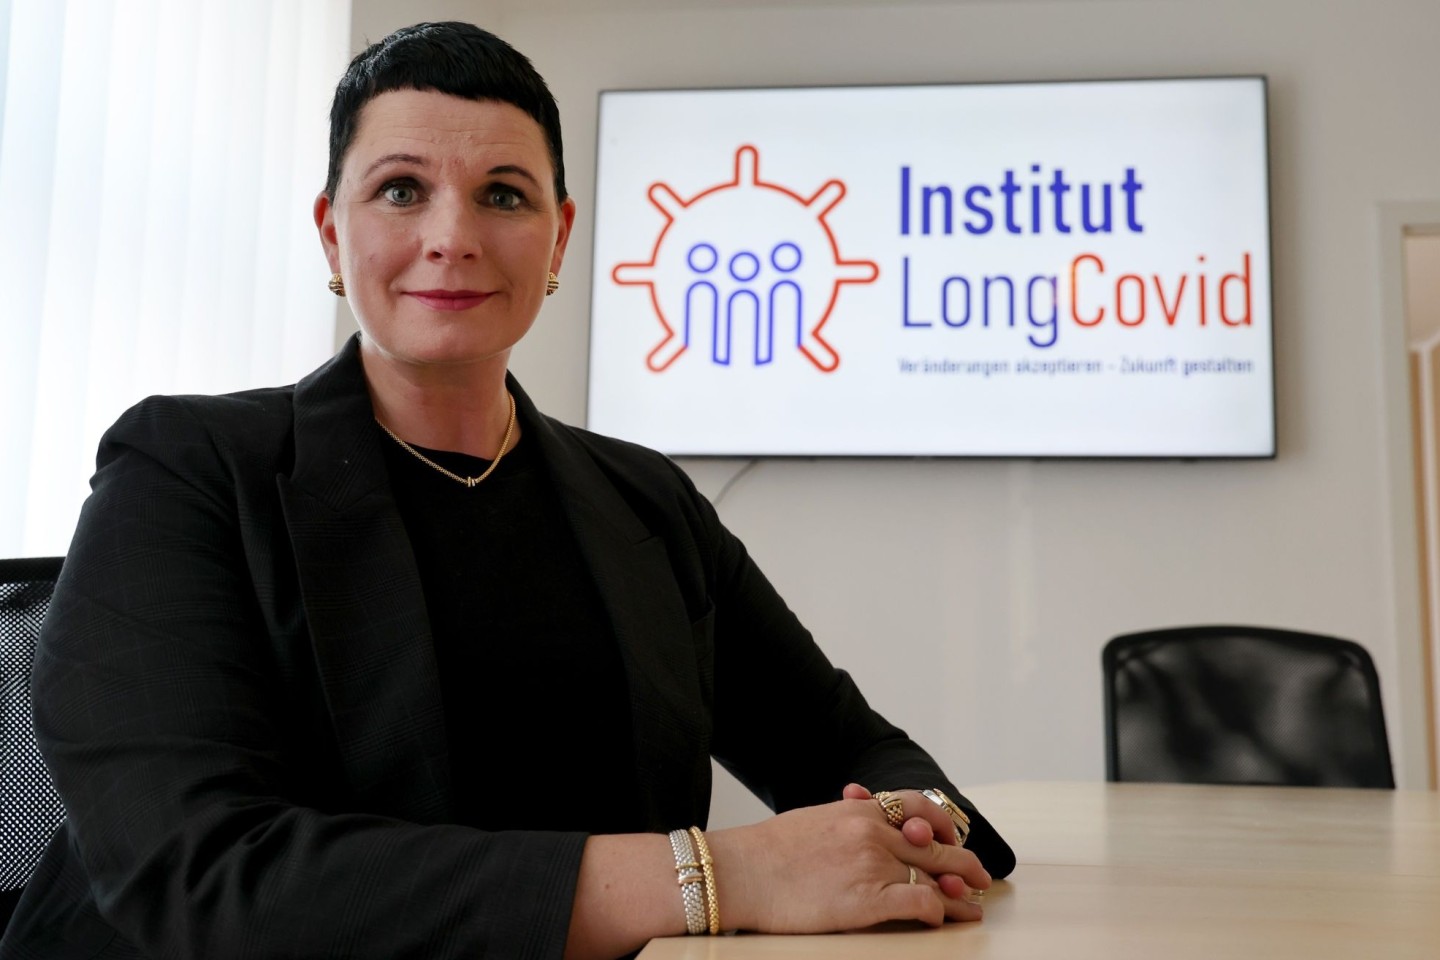 Jördis Frommhold, Expertin für Long-Covid-Erkranungen, stellt ihr privates Institut Long Covid vor.